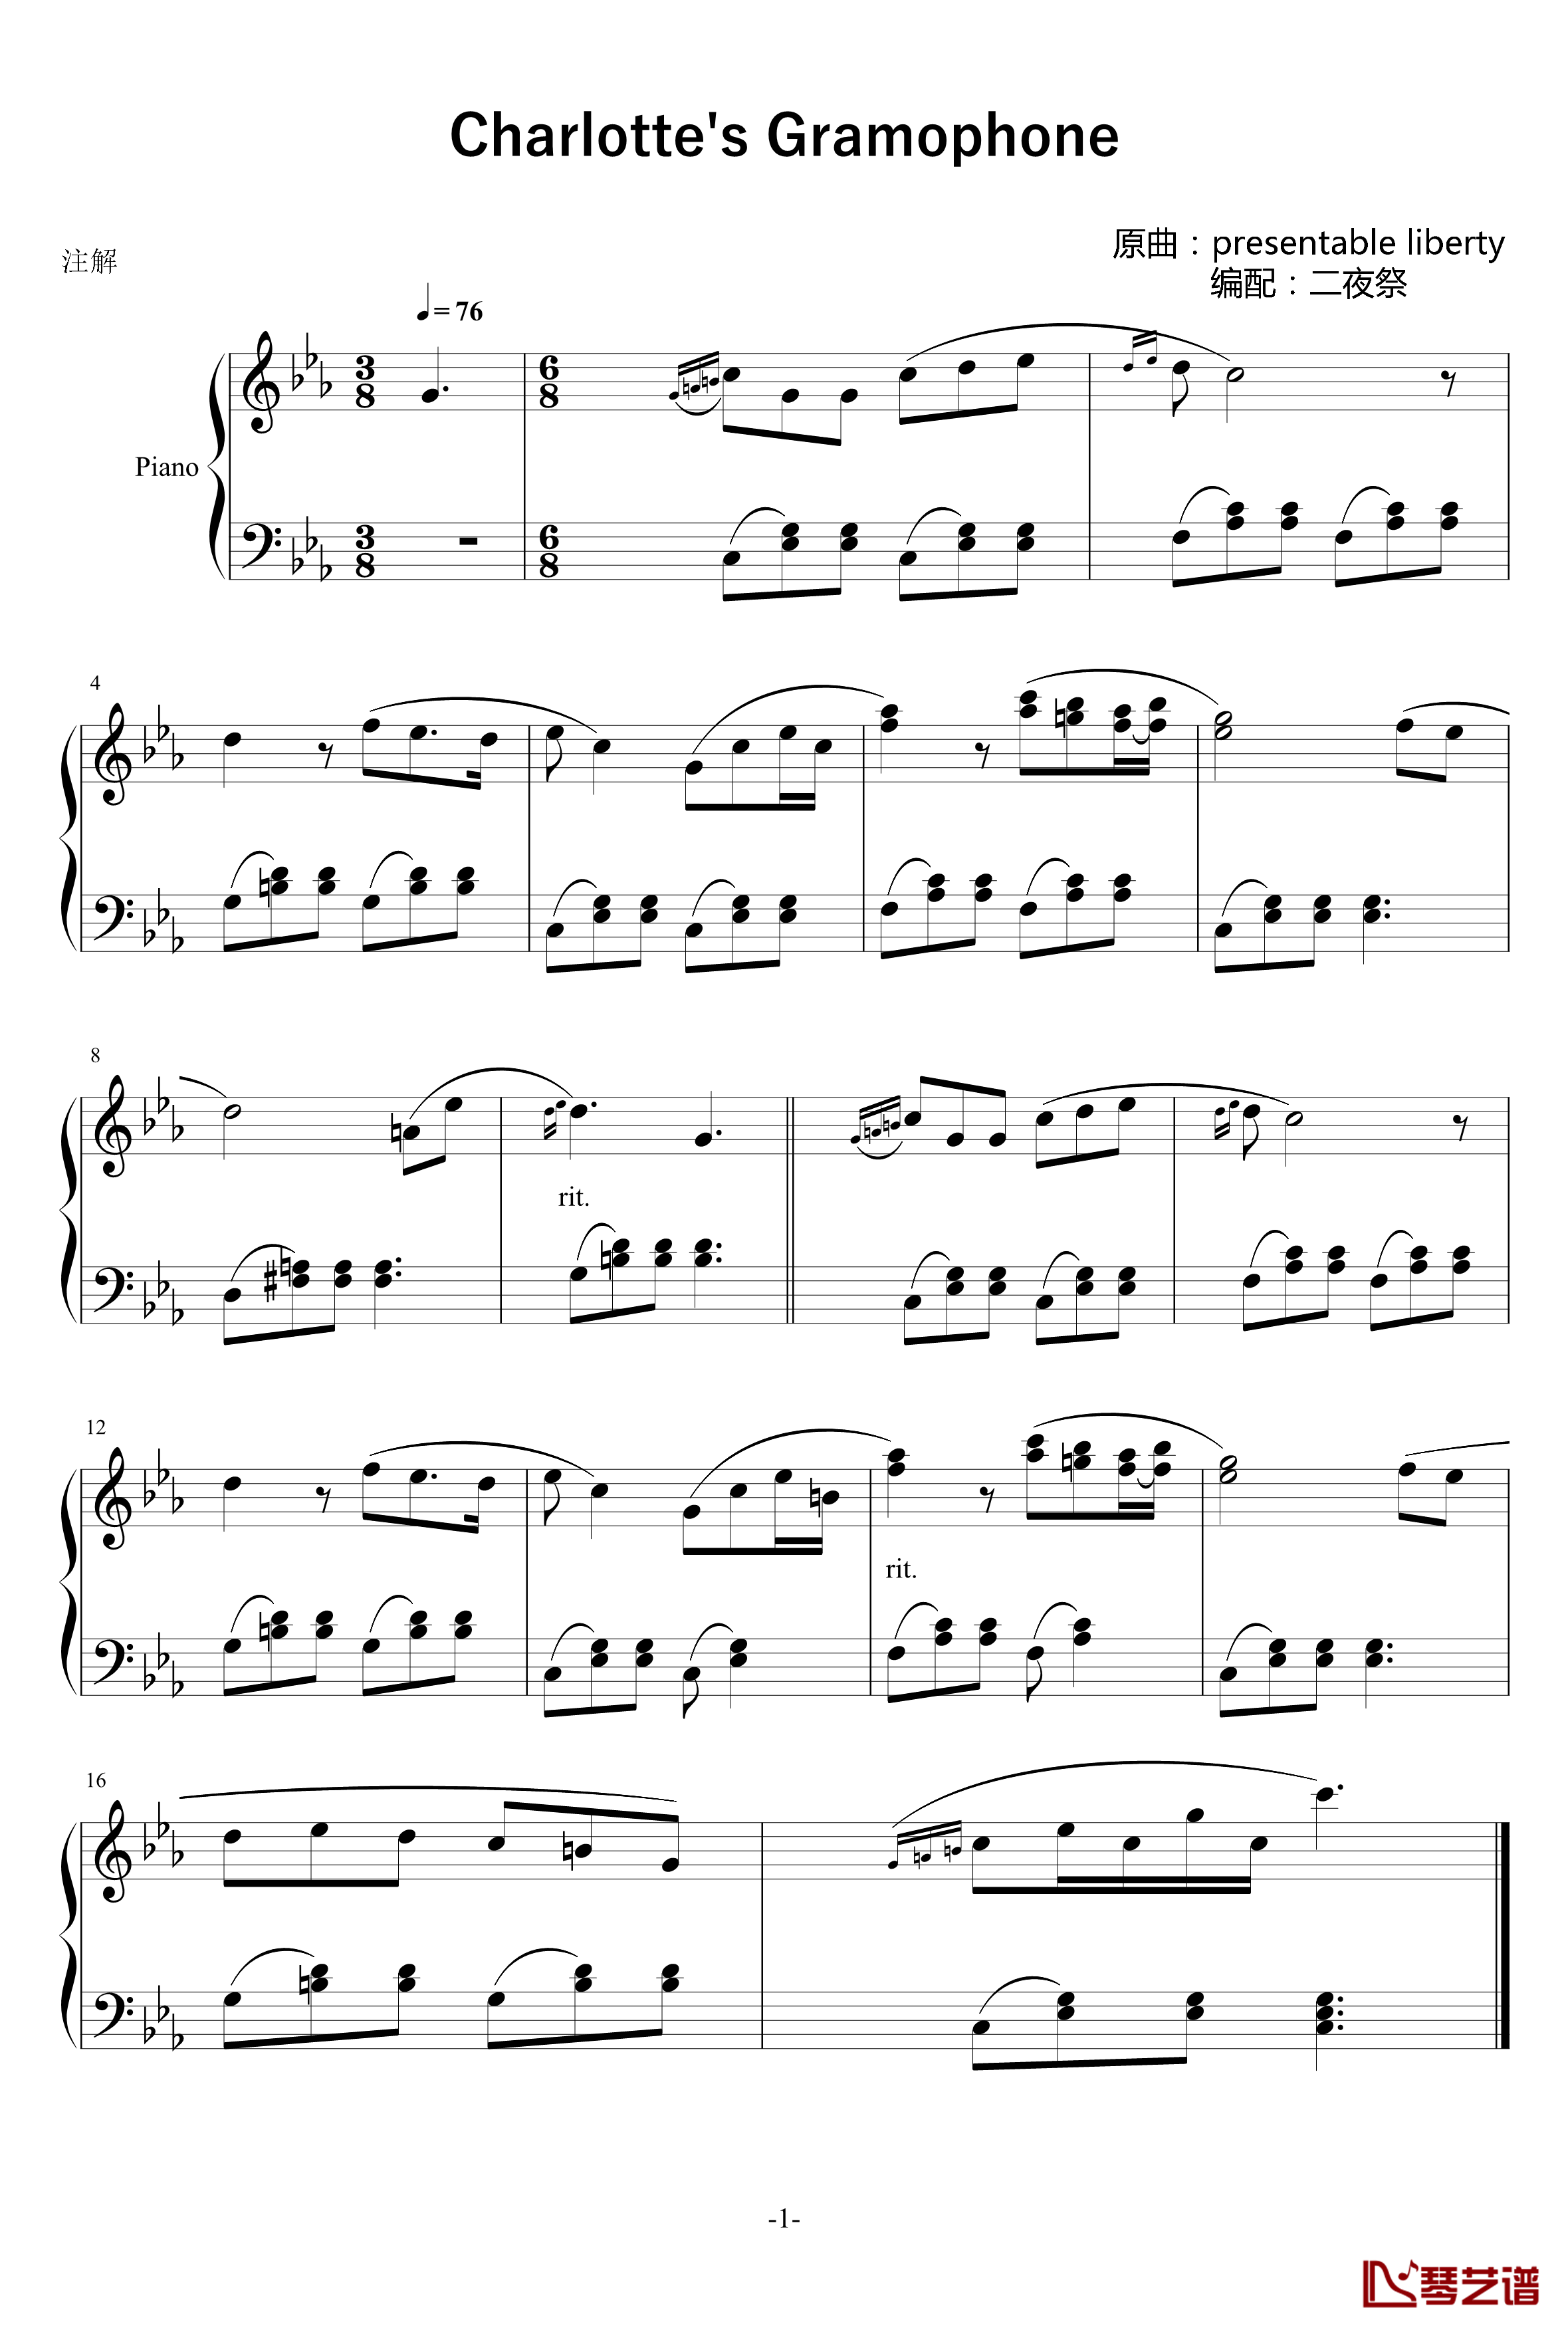 Charlottes Gramophone钢琴谱-送来的自由-谜之声实况1